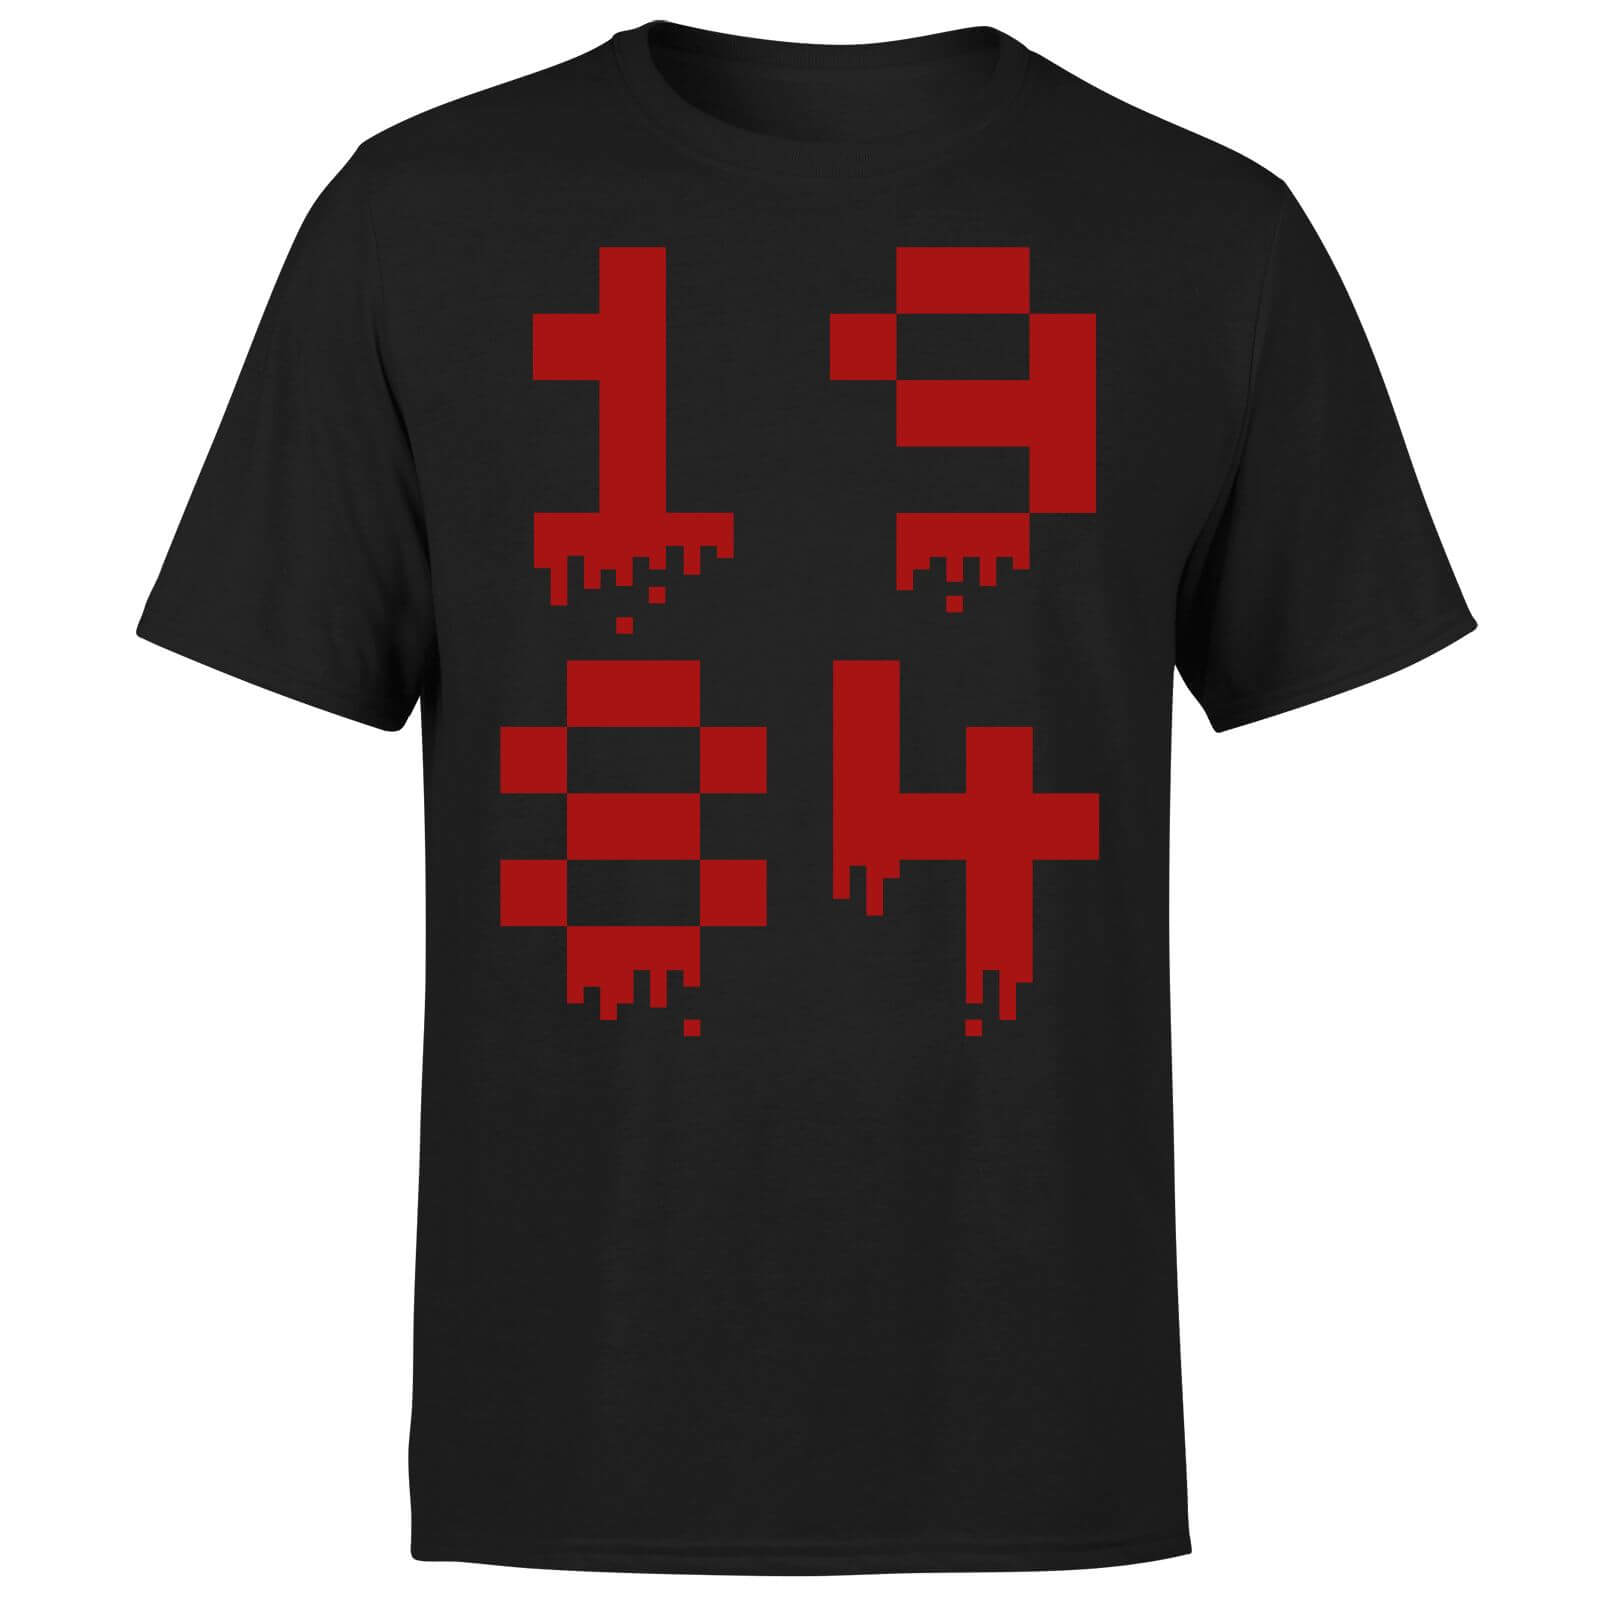 1984 Gaming T-Shirt - Black - S - Black